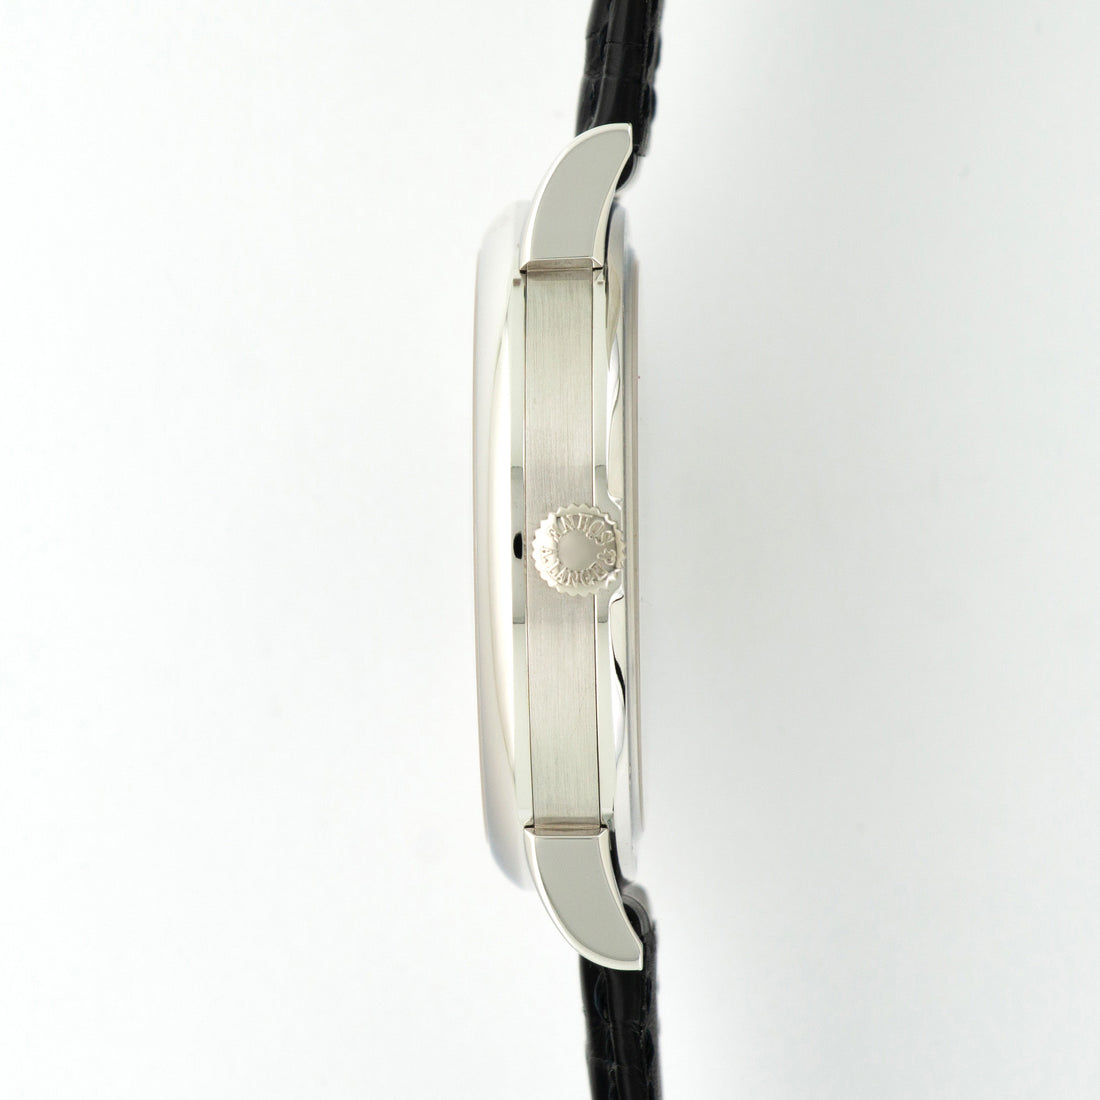 A. Lange & Sohne Platinum Grande Lange 1 Lumen Watch Ref. 117.035